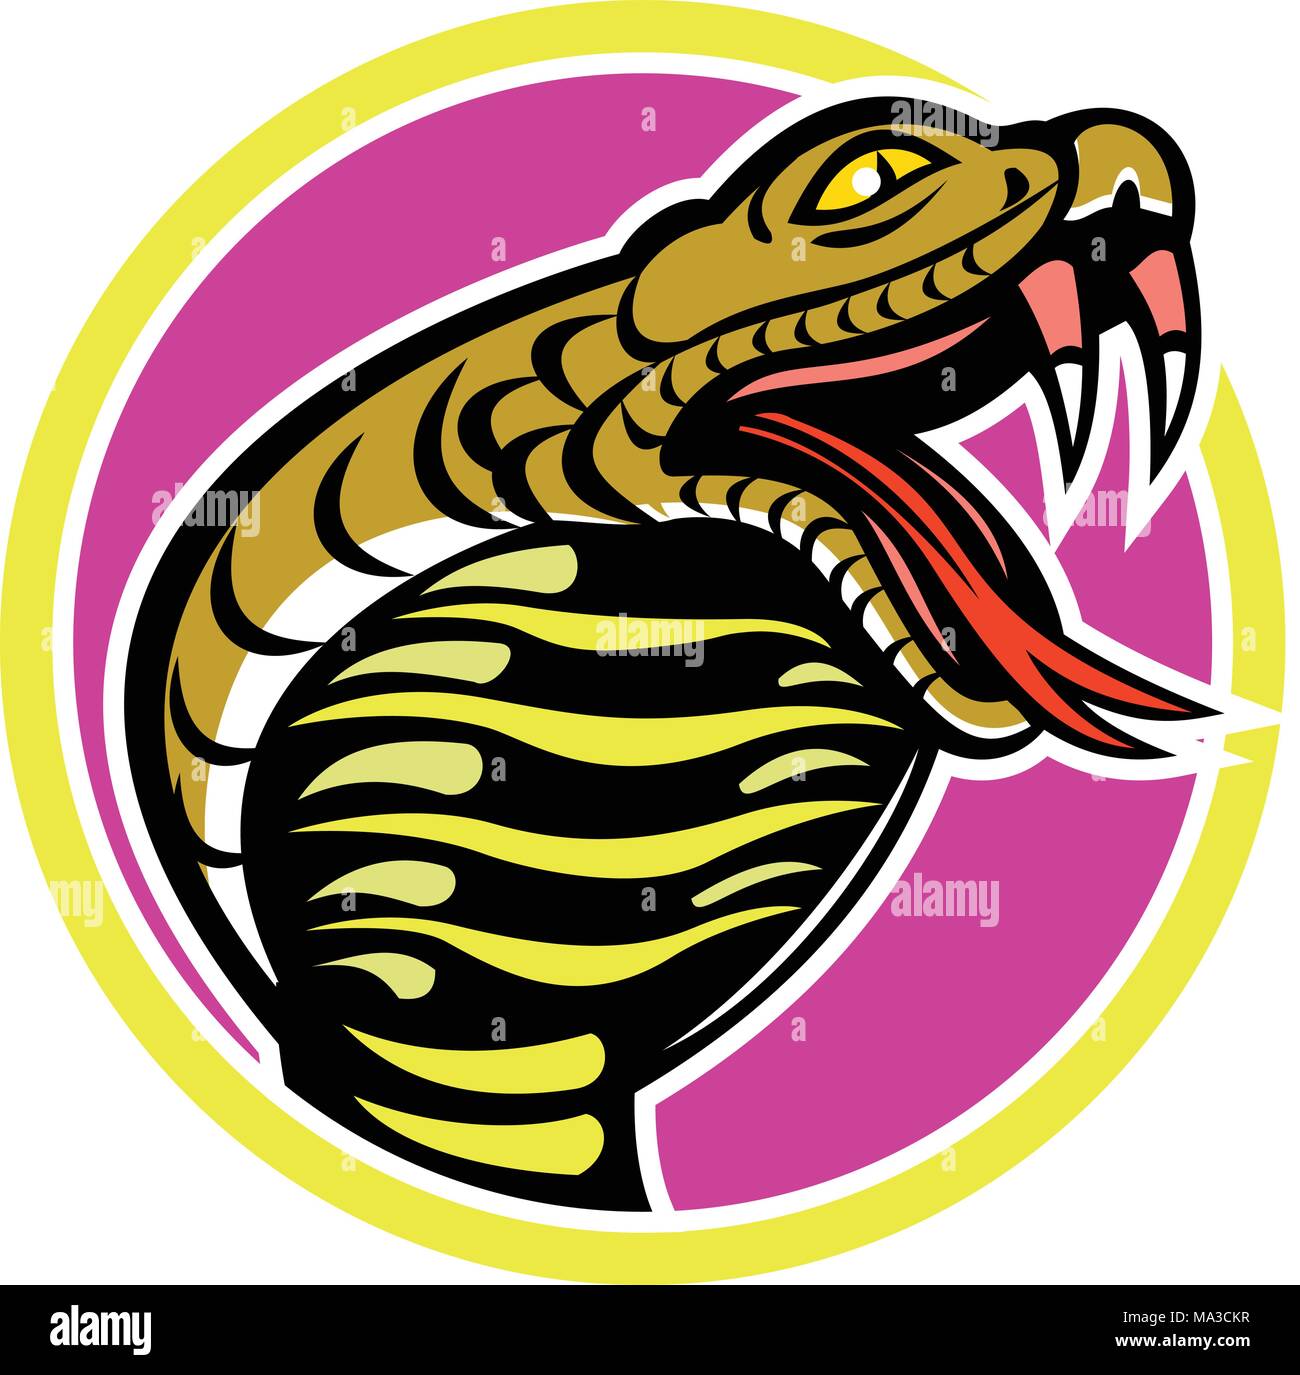 Icono de mascota ilustración de rey cobra, Ophiophagus hannah, o hamadryad, una serpiente venenosa en la familia Elapidae, endémica del Sudeste de Asia dentro de CI Ilustración del Vector